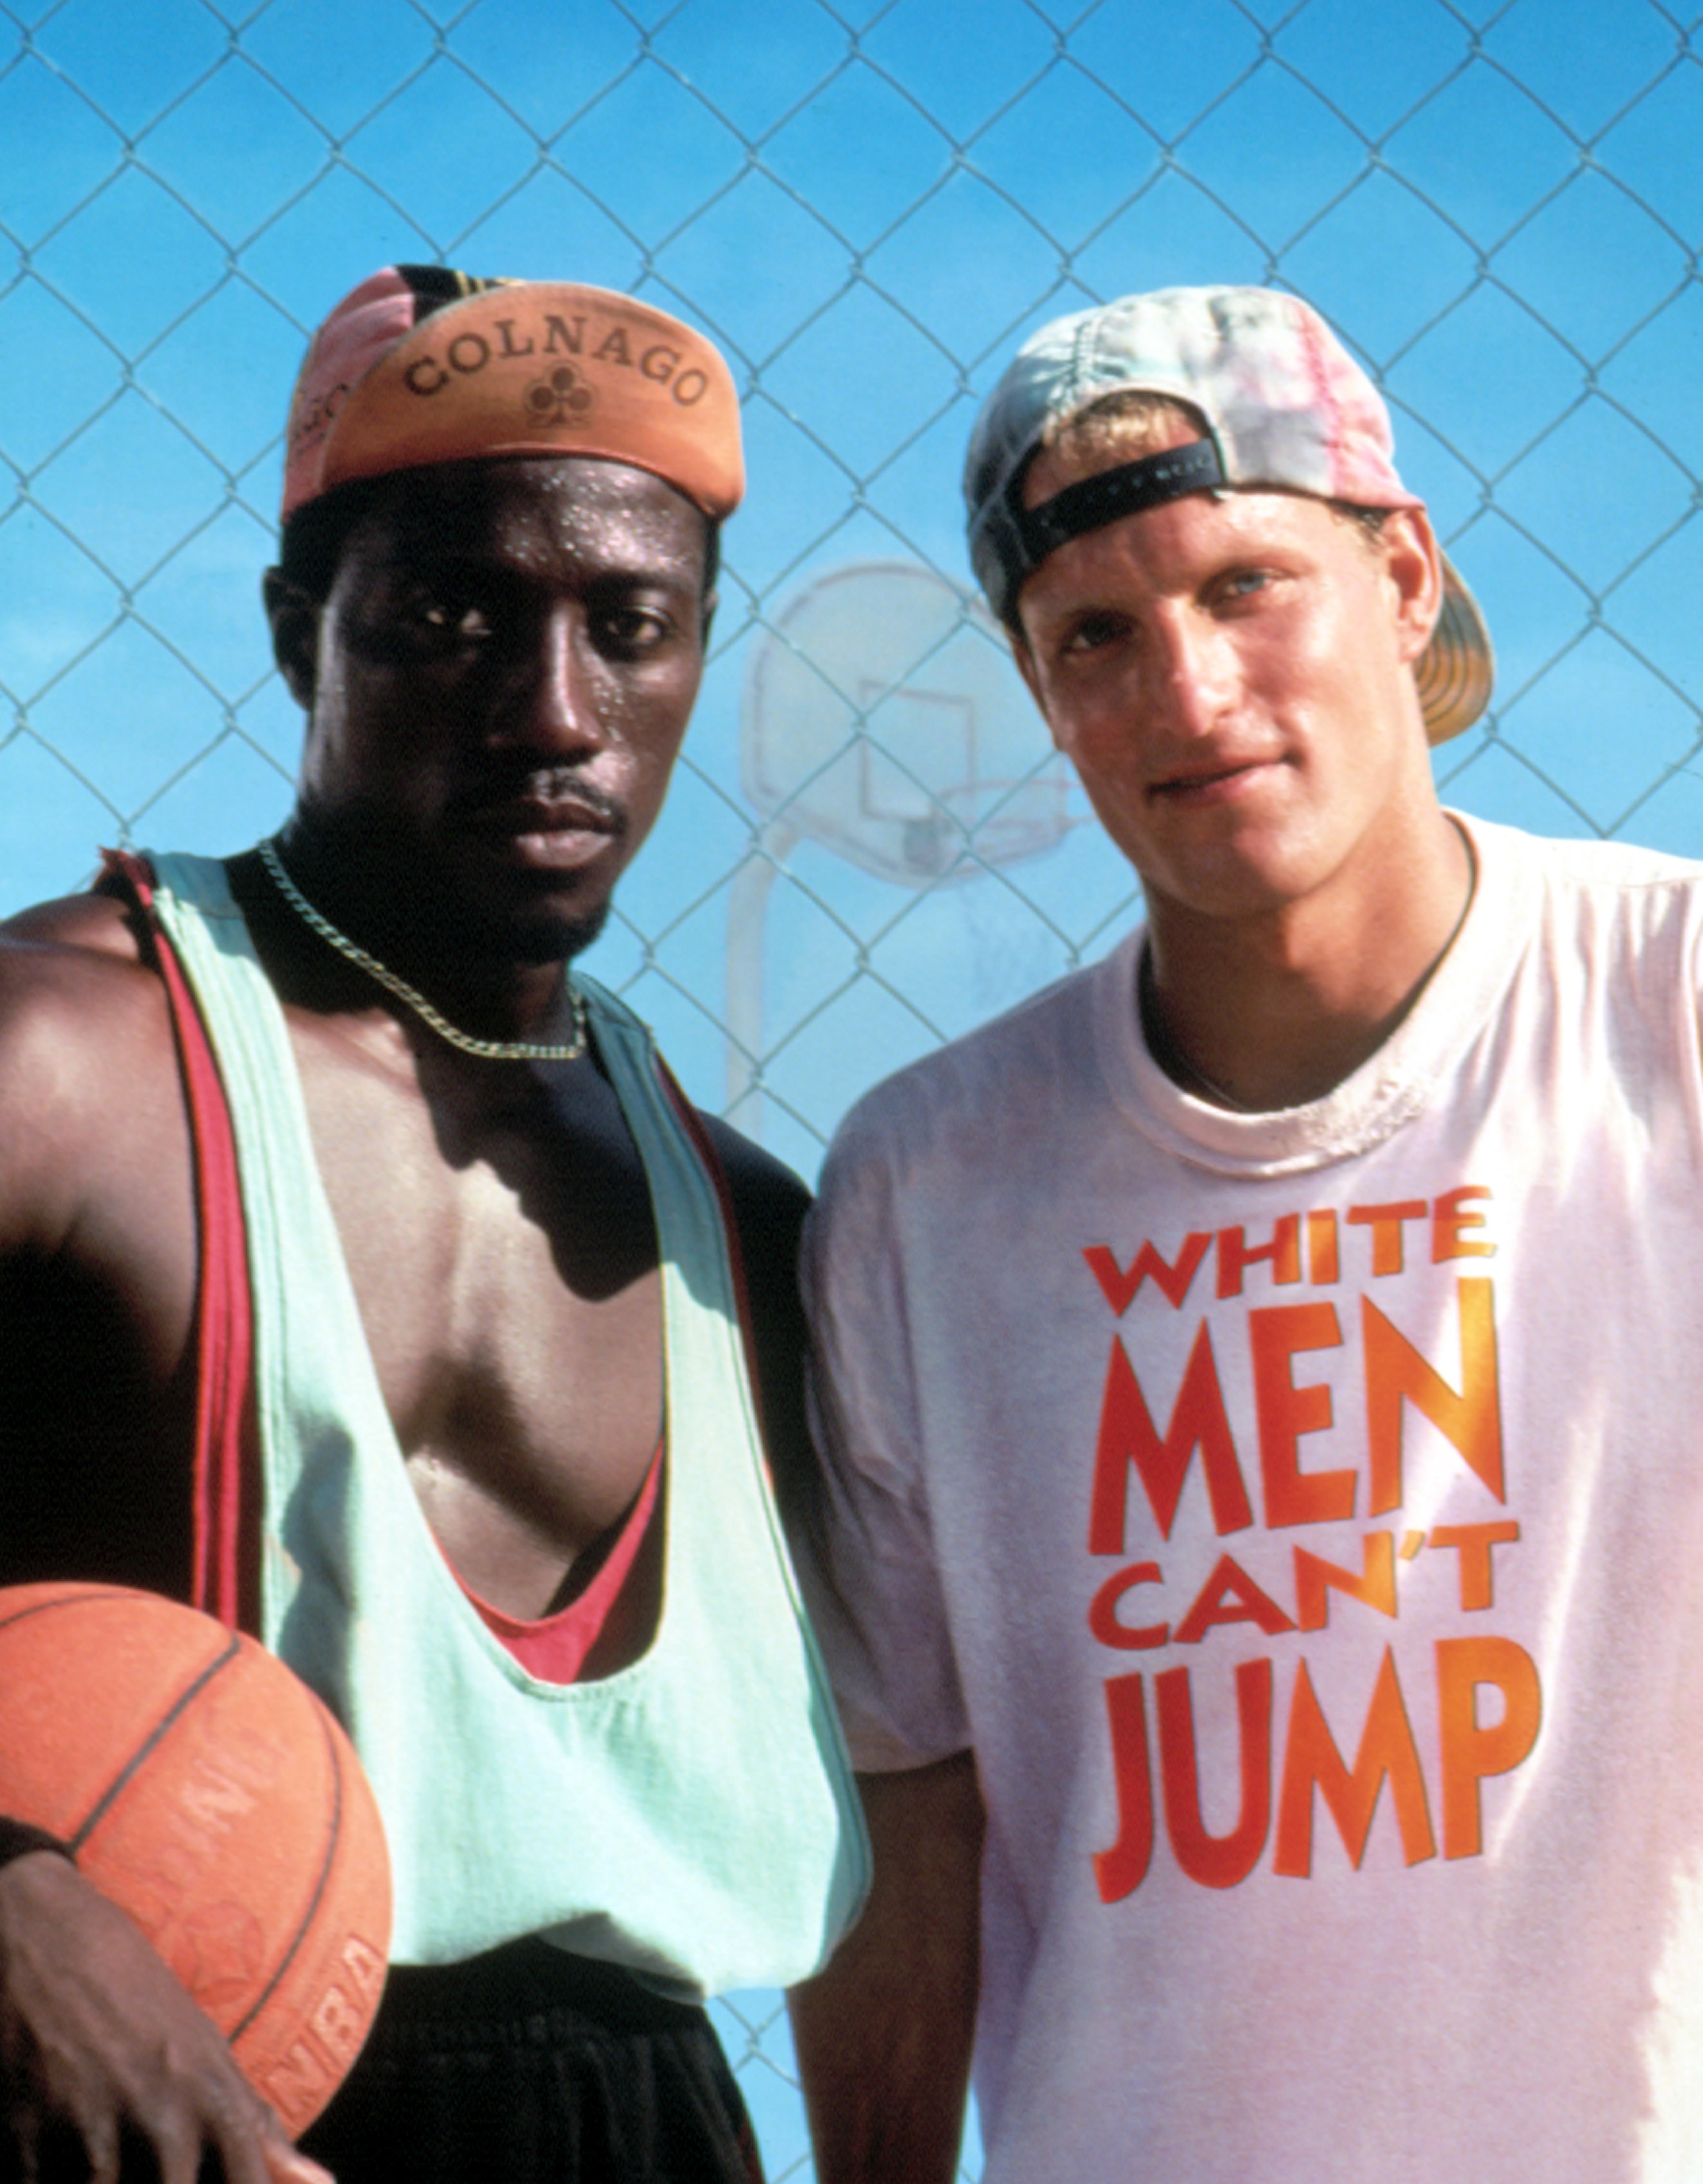 韦斯利·斯奈普斯西德尼和伍迪·哈里森比利带来的宣传照片“白人停下来# x27; t Jump"